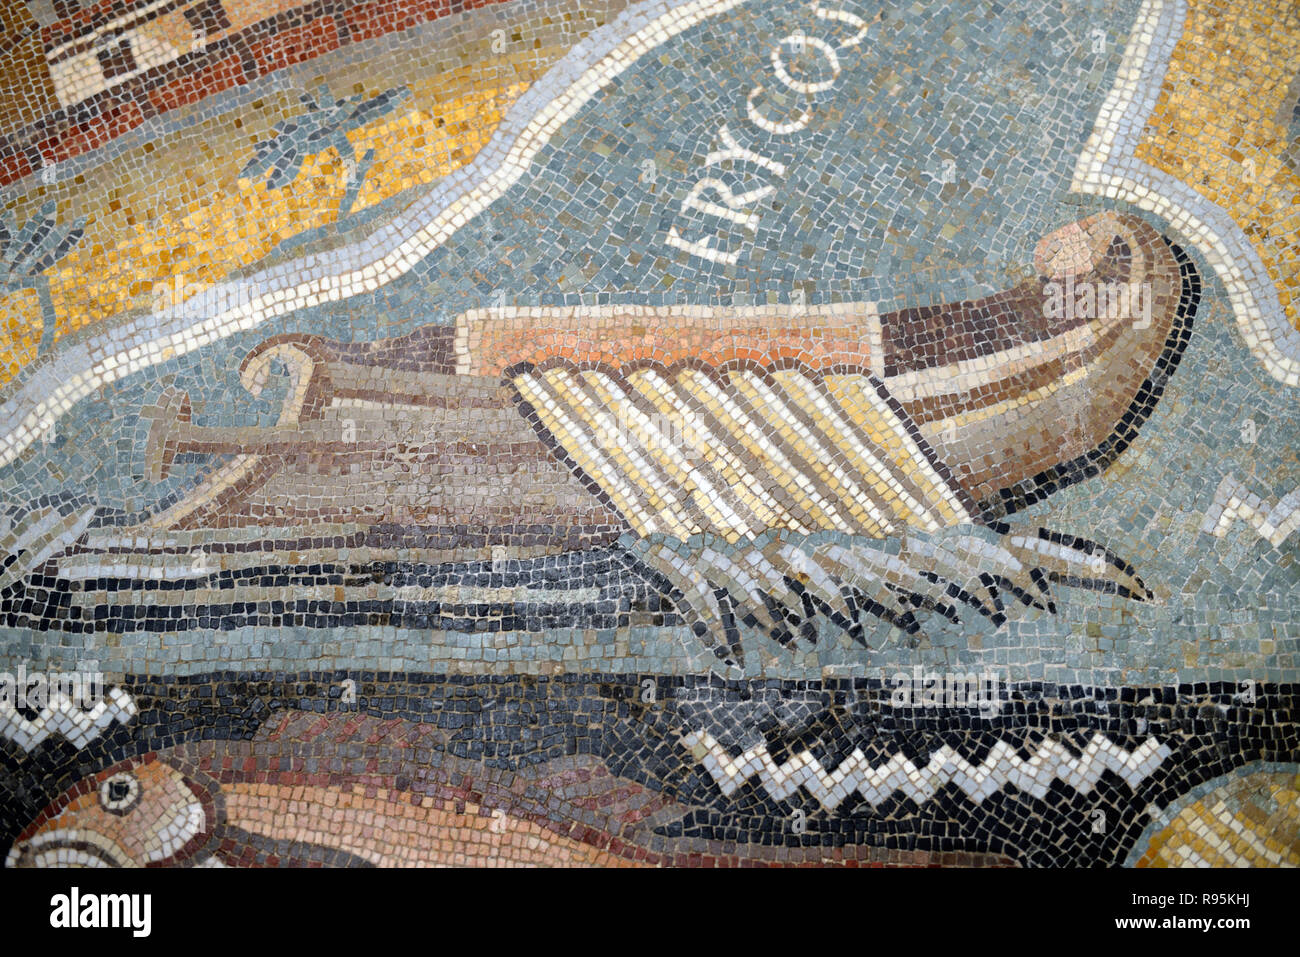 Mosaïque romaine (c3rd-c4e) de l'Office romain, bateau à rames ou en bois Bateau de Erice, Sicile, à partir de la ville romaine antique de Ammaedara Tunisie Haidra Banque D'Images